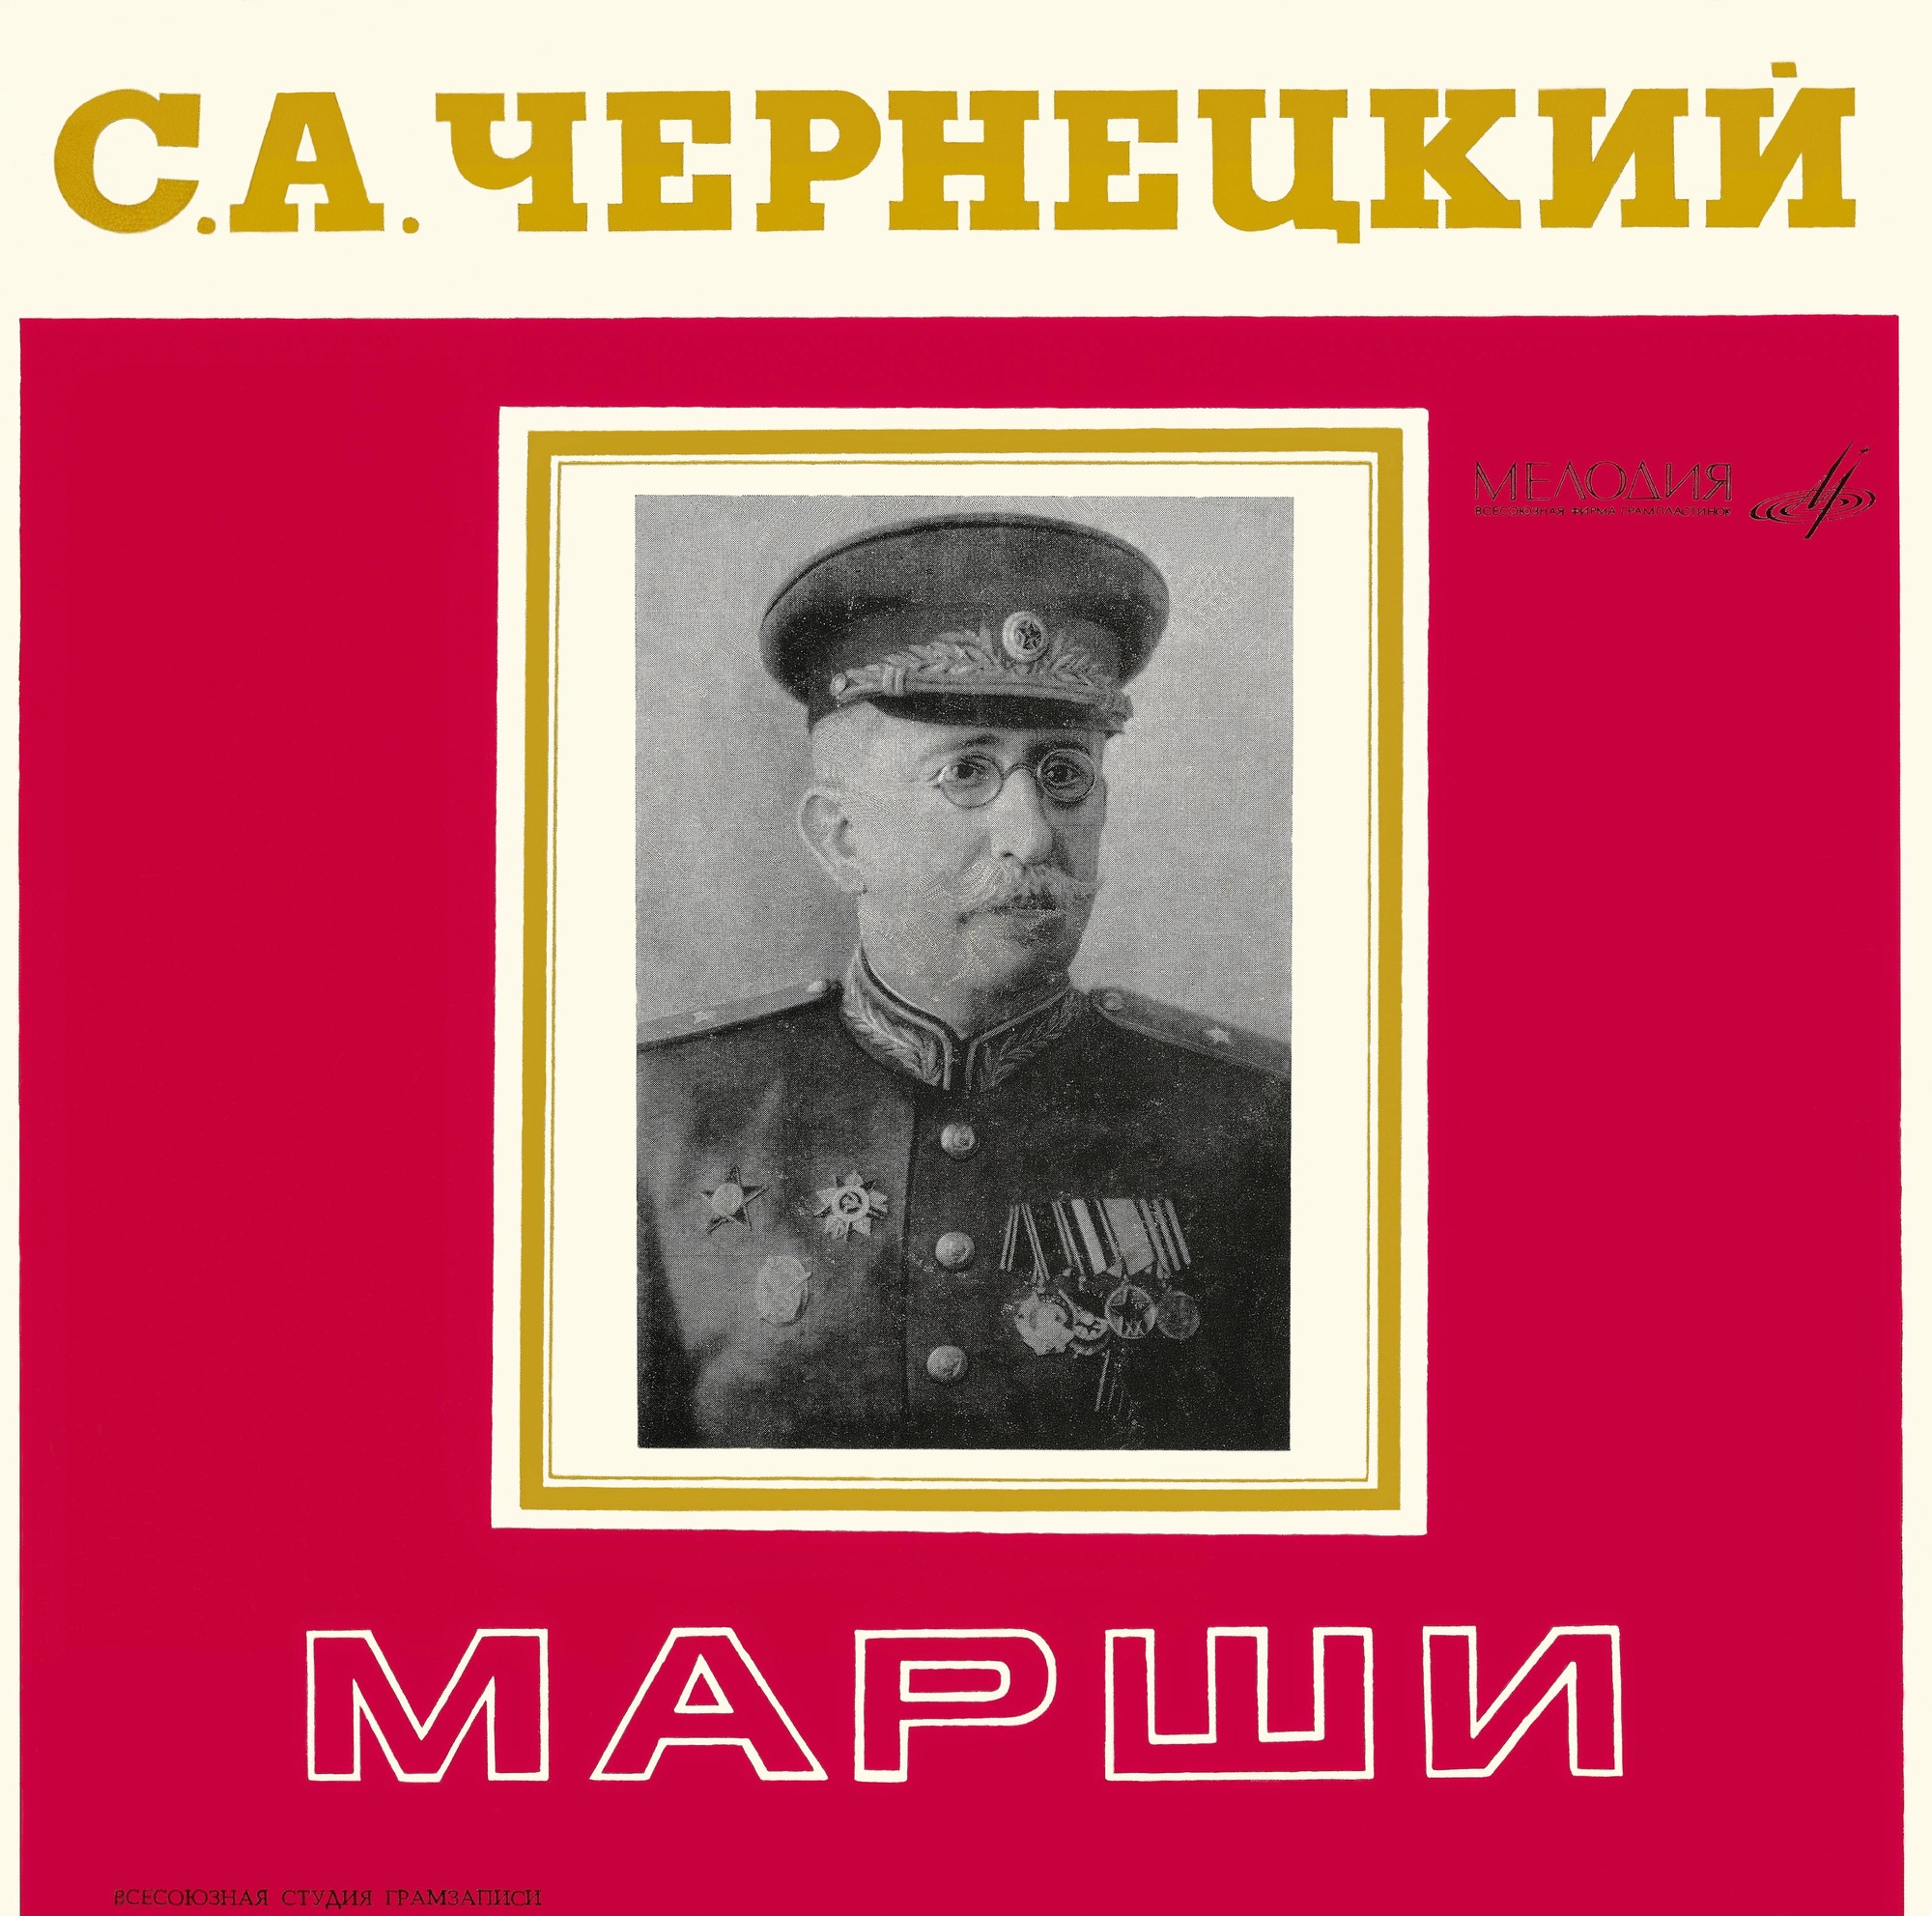 ИЗБРАННЫЕ МАРШИ С. ЧЕРНЕЦКОГО (1881—1950)